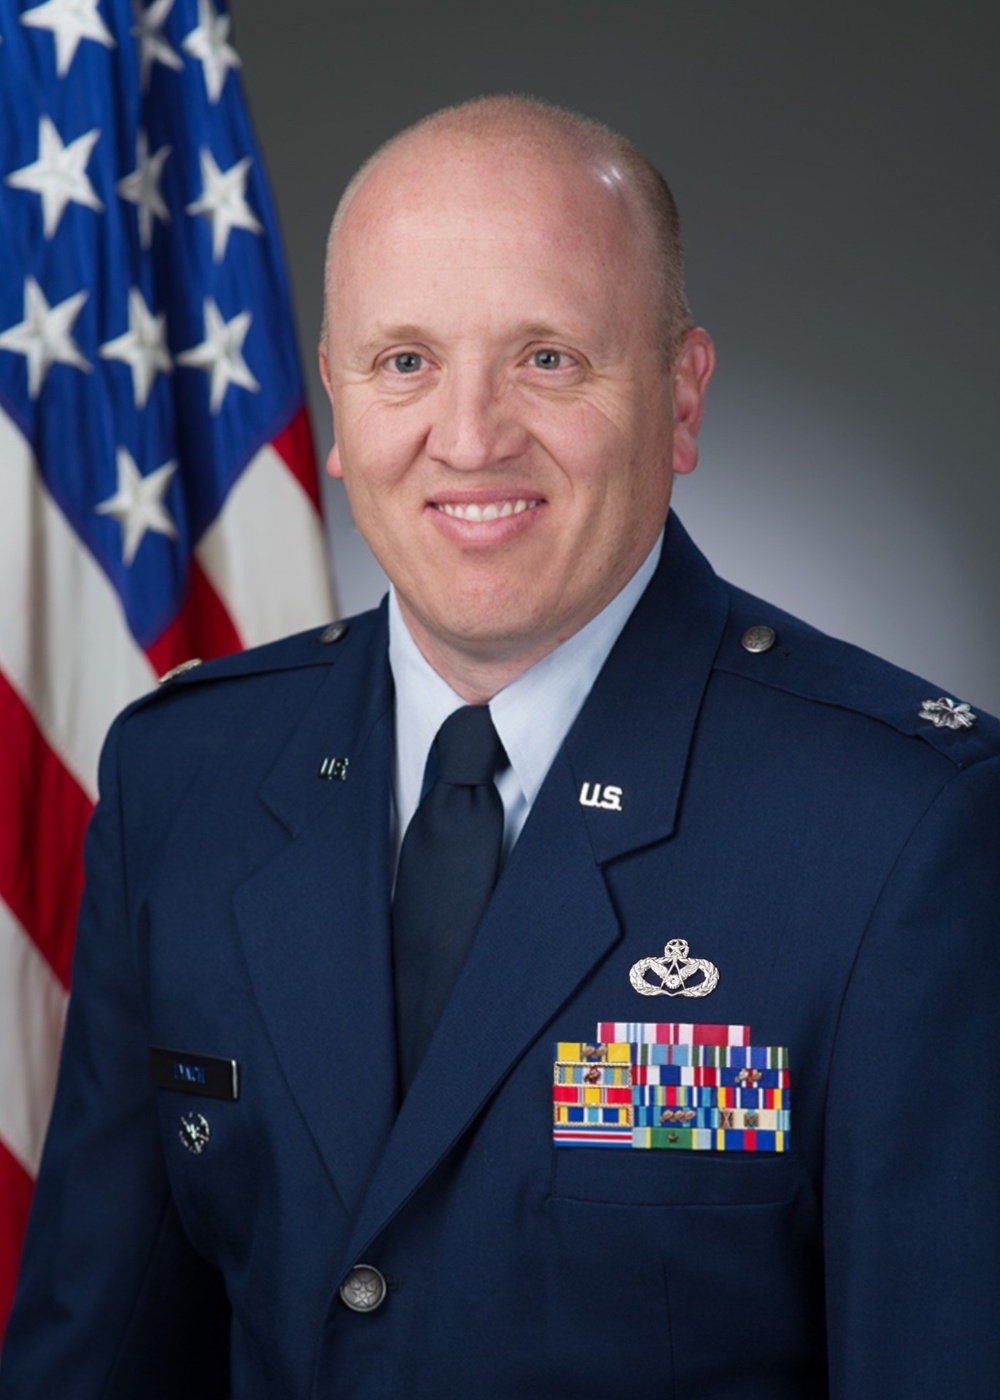 Lt. Col. Shane Lynch